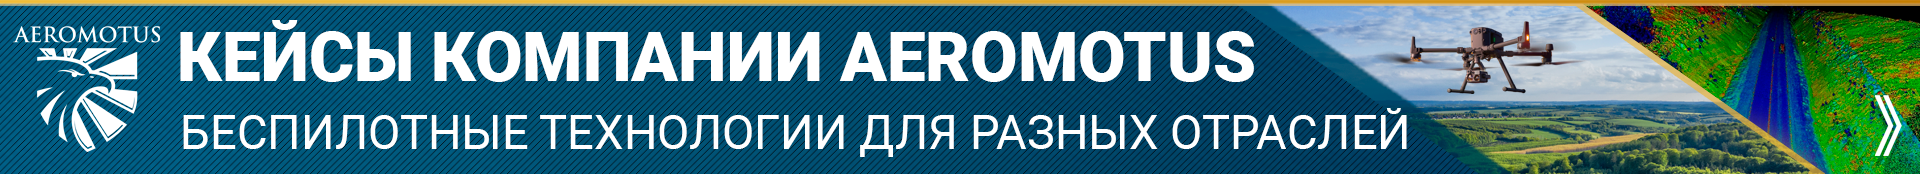 Обучение пилотированию БПЛА и обработке данных для ООО «Газпромнефть - Заполярье» - Учебный центр Воздух